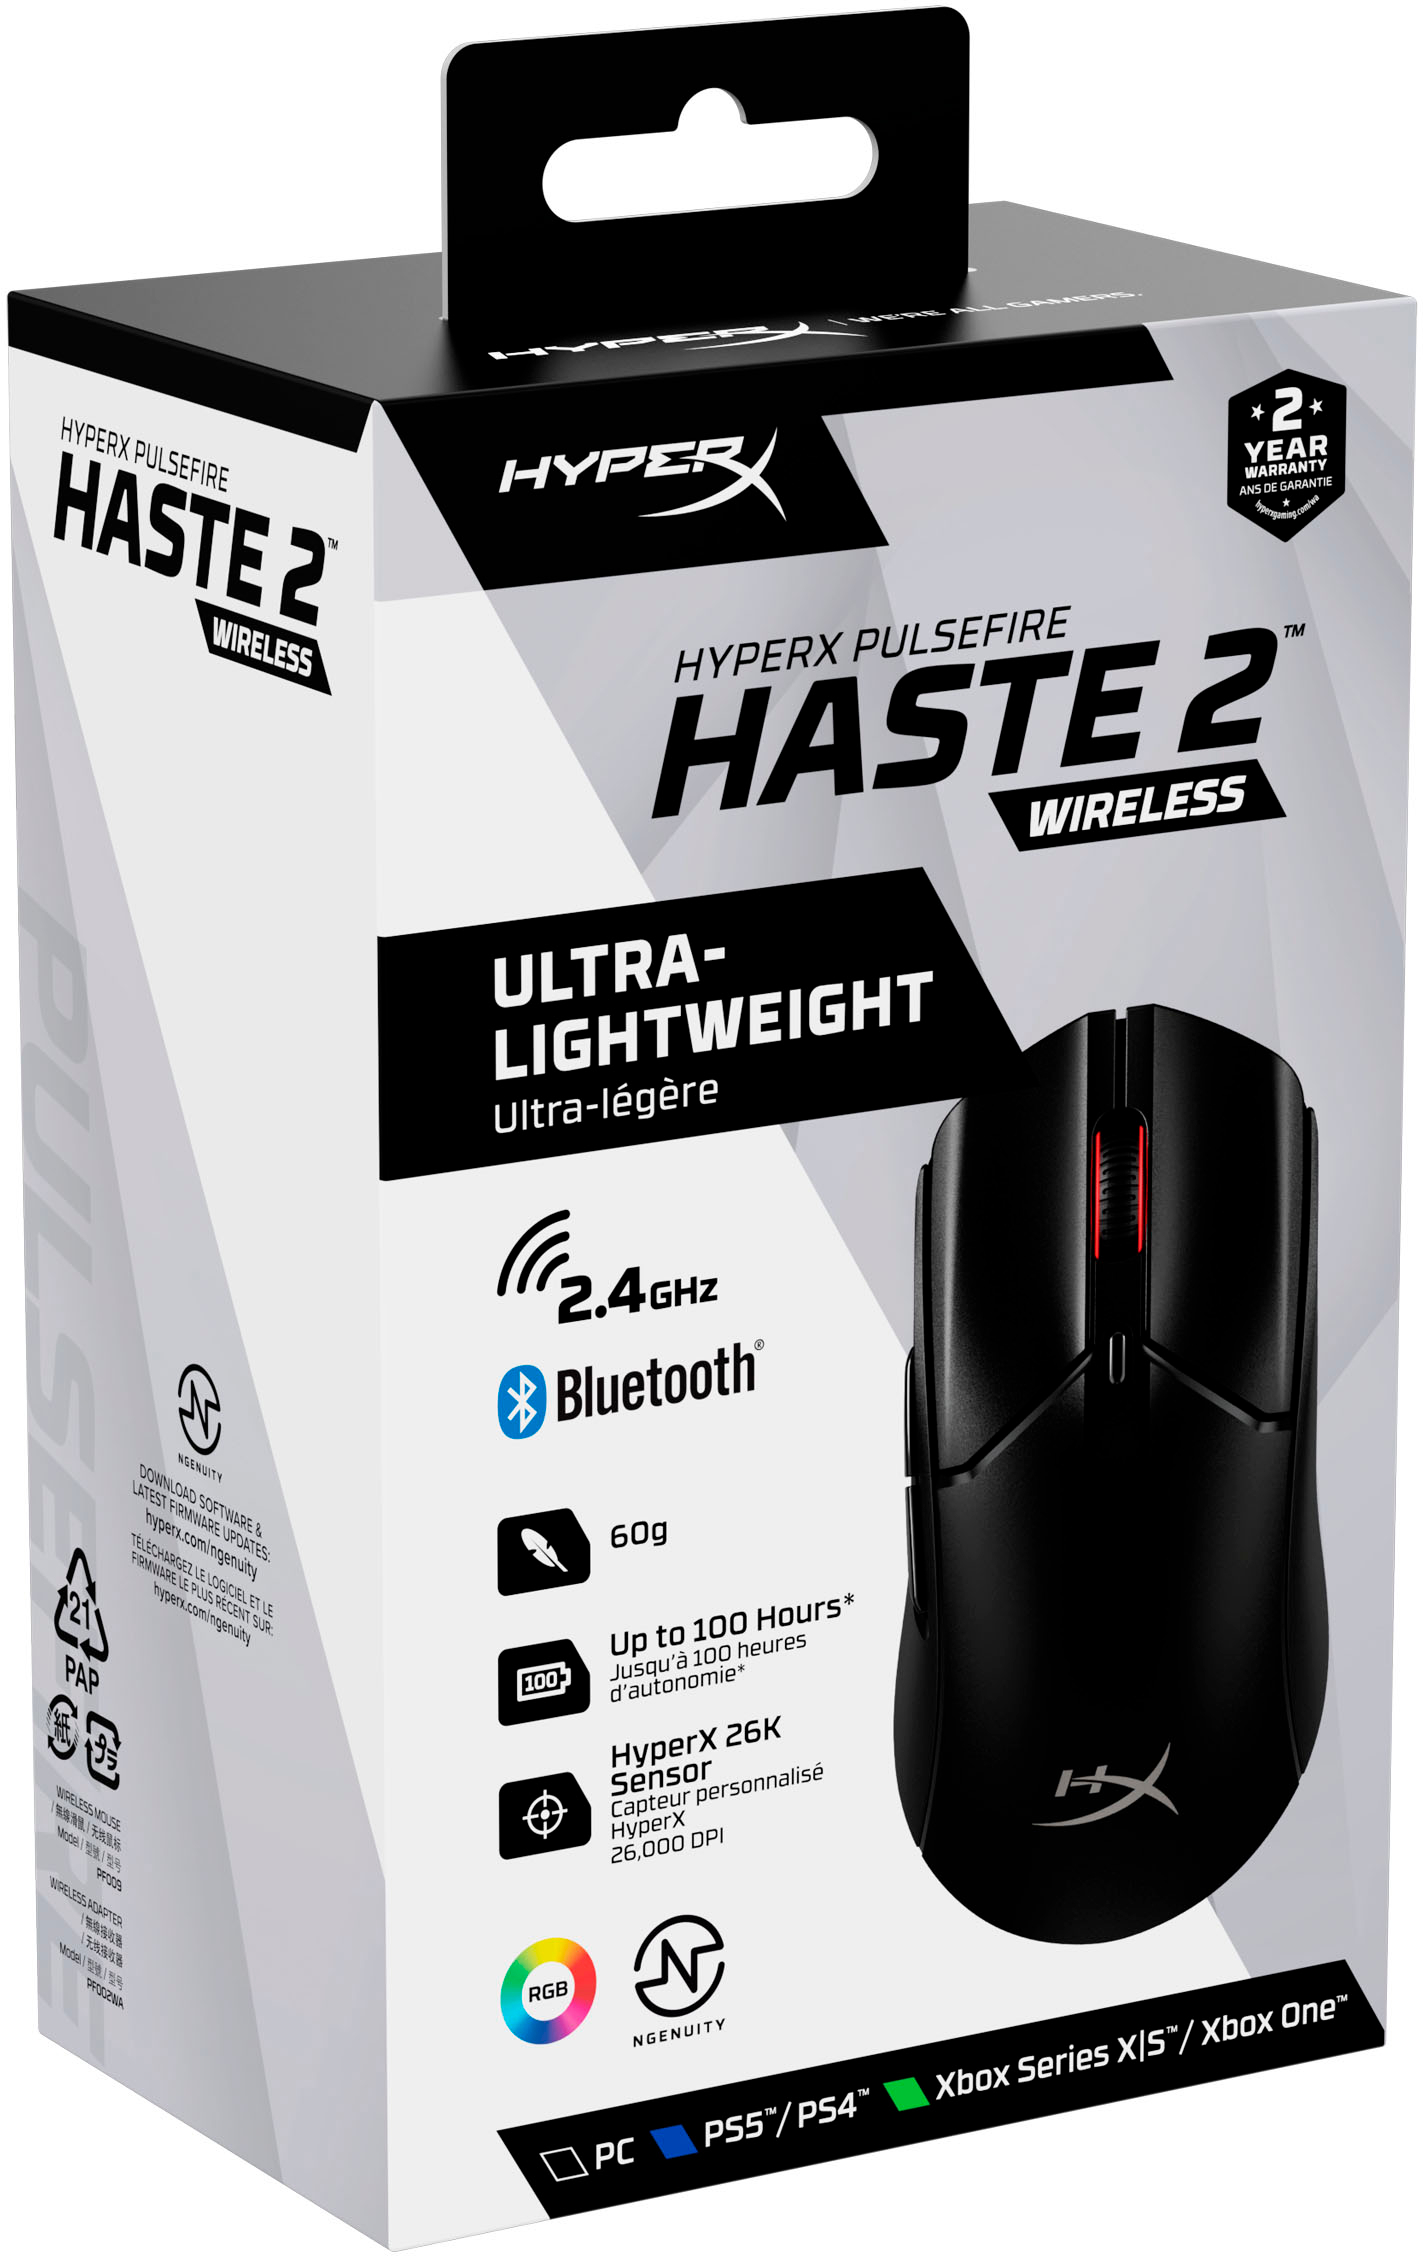 HyperX Cloud III Wireless and HyperX Pulsefire Haste 2 Wireless